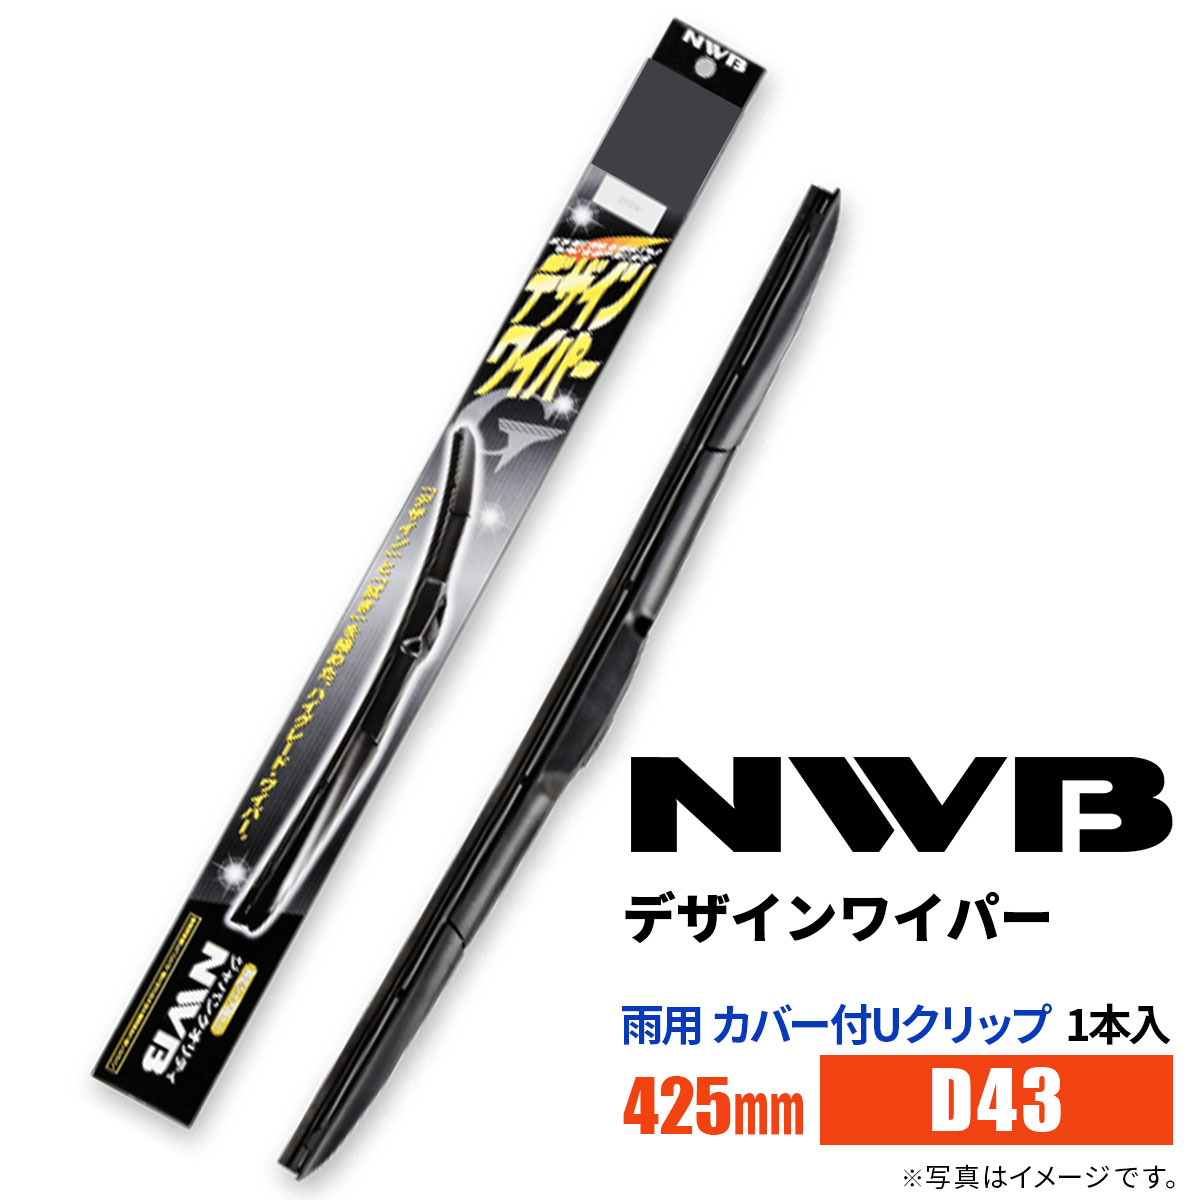 NWB デザインワイパー D43 425mm 1本入 雨用ワイパー カバー付Uクリップ